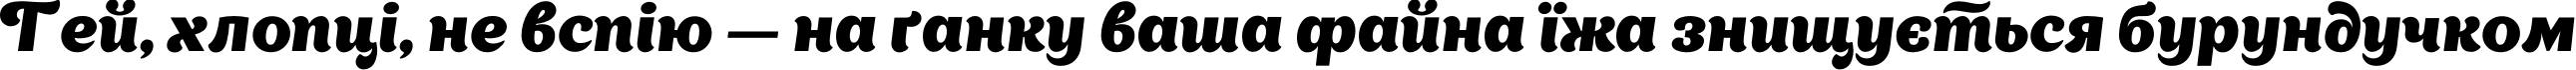 Пример написания шрифтом AppetiteNew текста на украинском